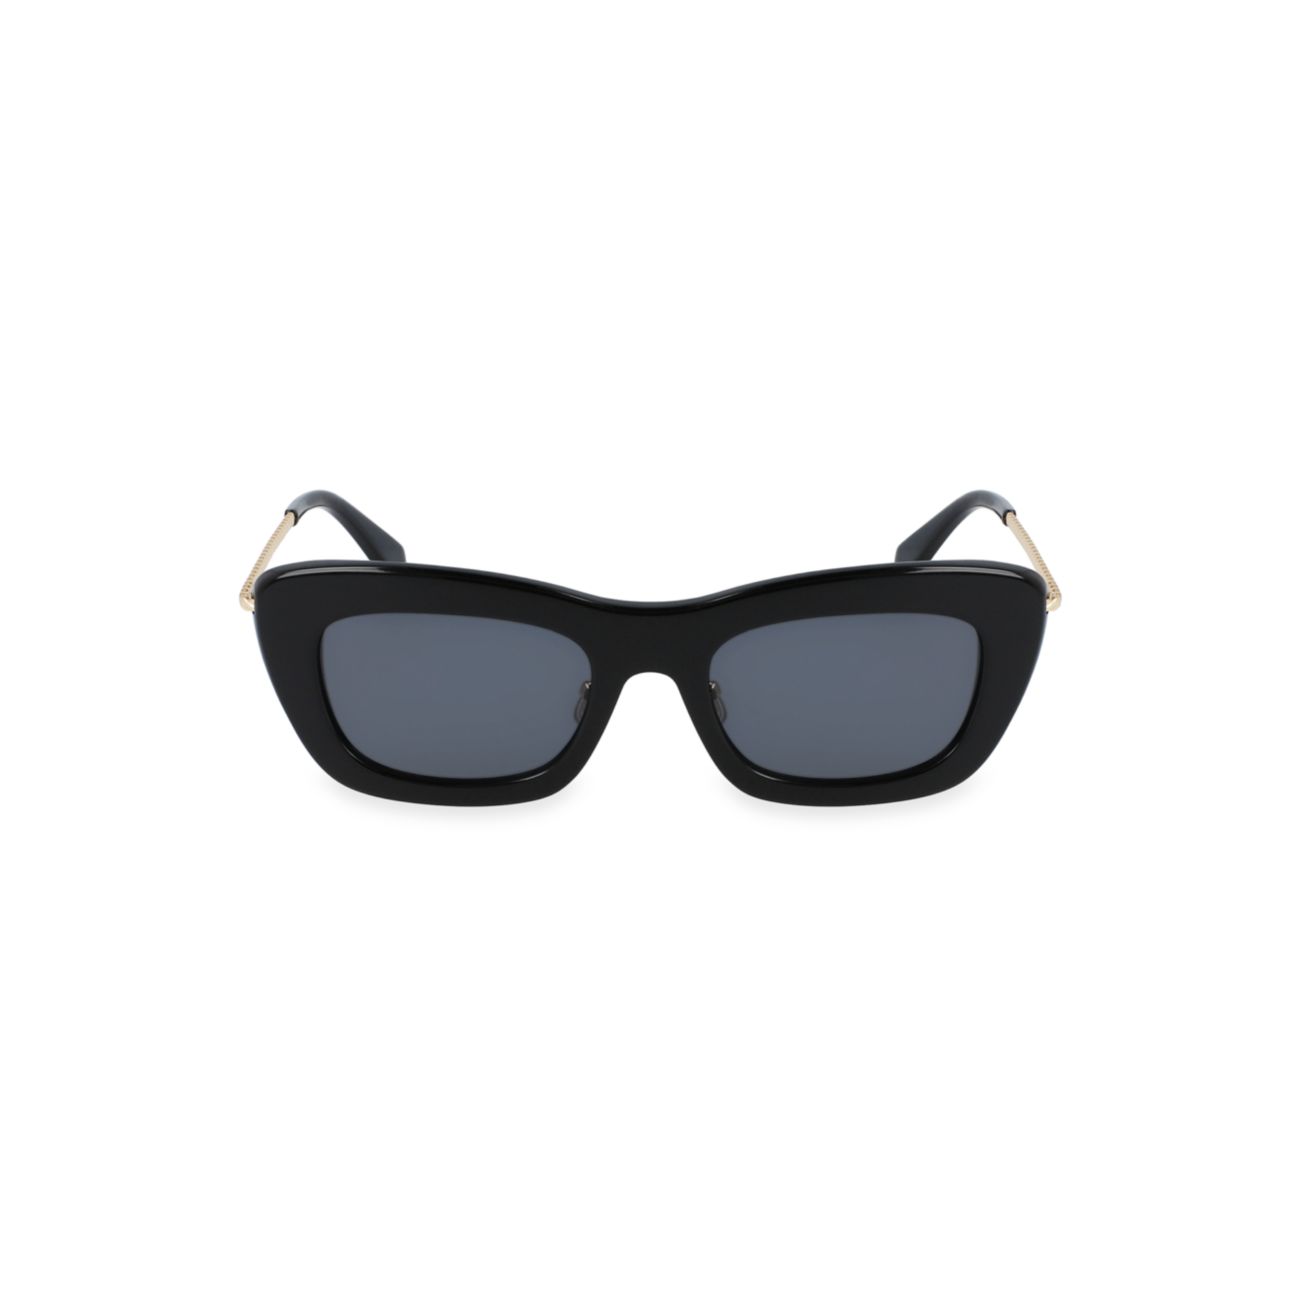 Прямоугольные солнцезащитные очки Babe 51 мм Lanvin